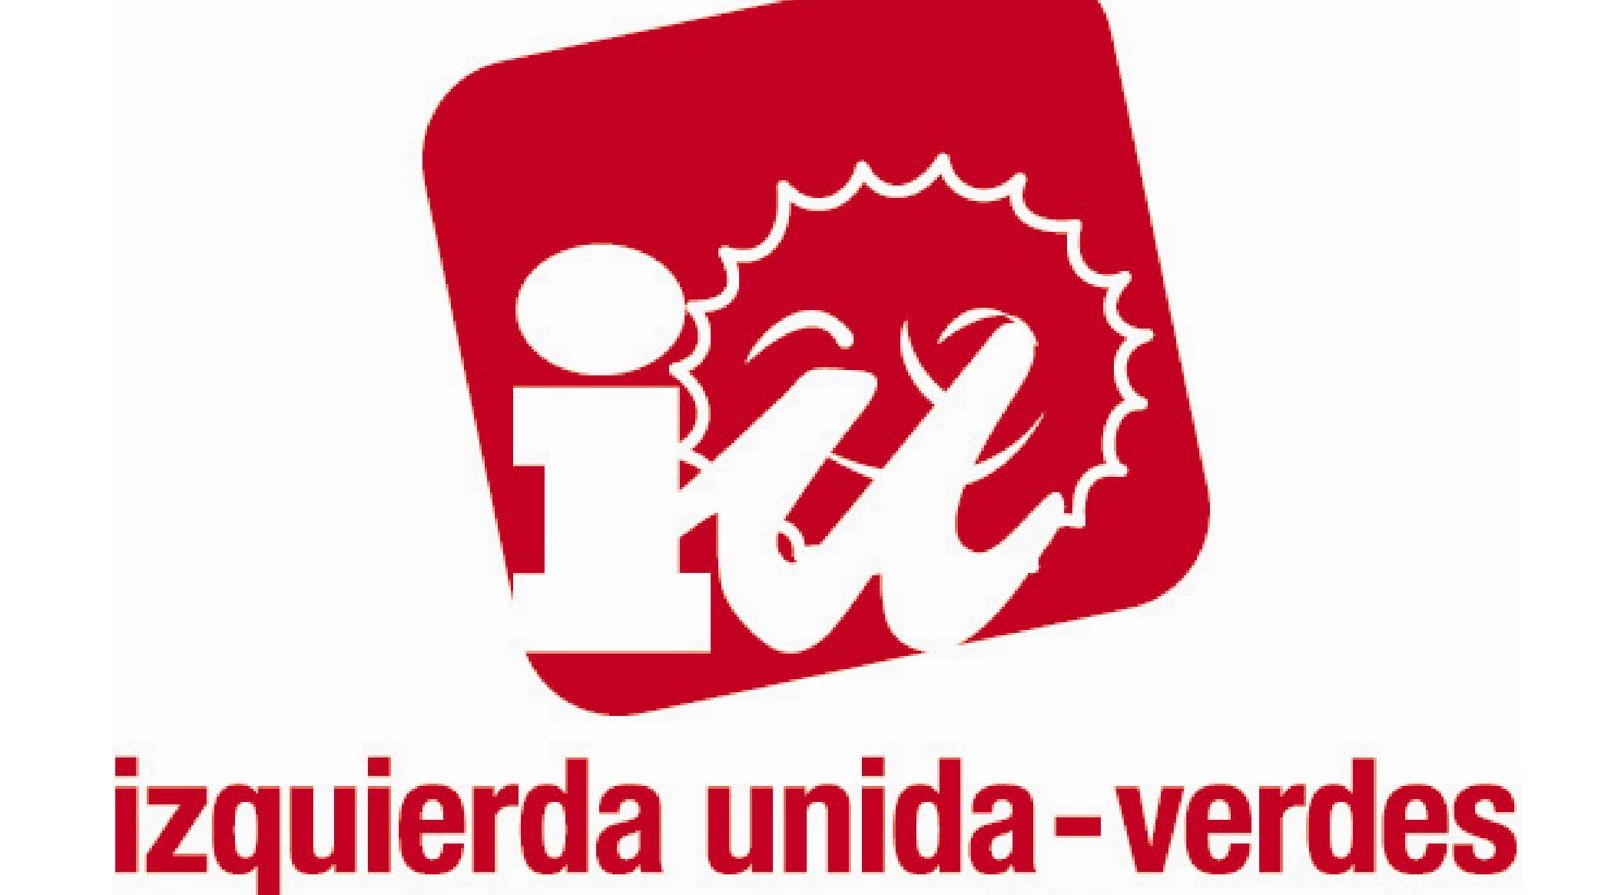 IU Verdes acusa a PP, PSOE y C’s de no “hacer nada serio”